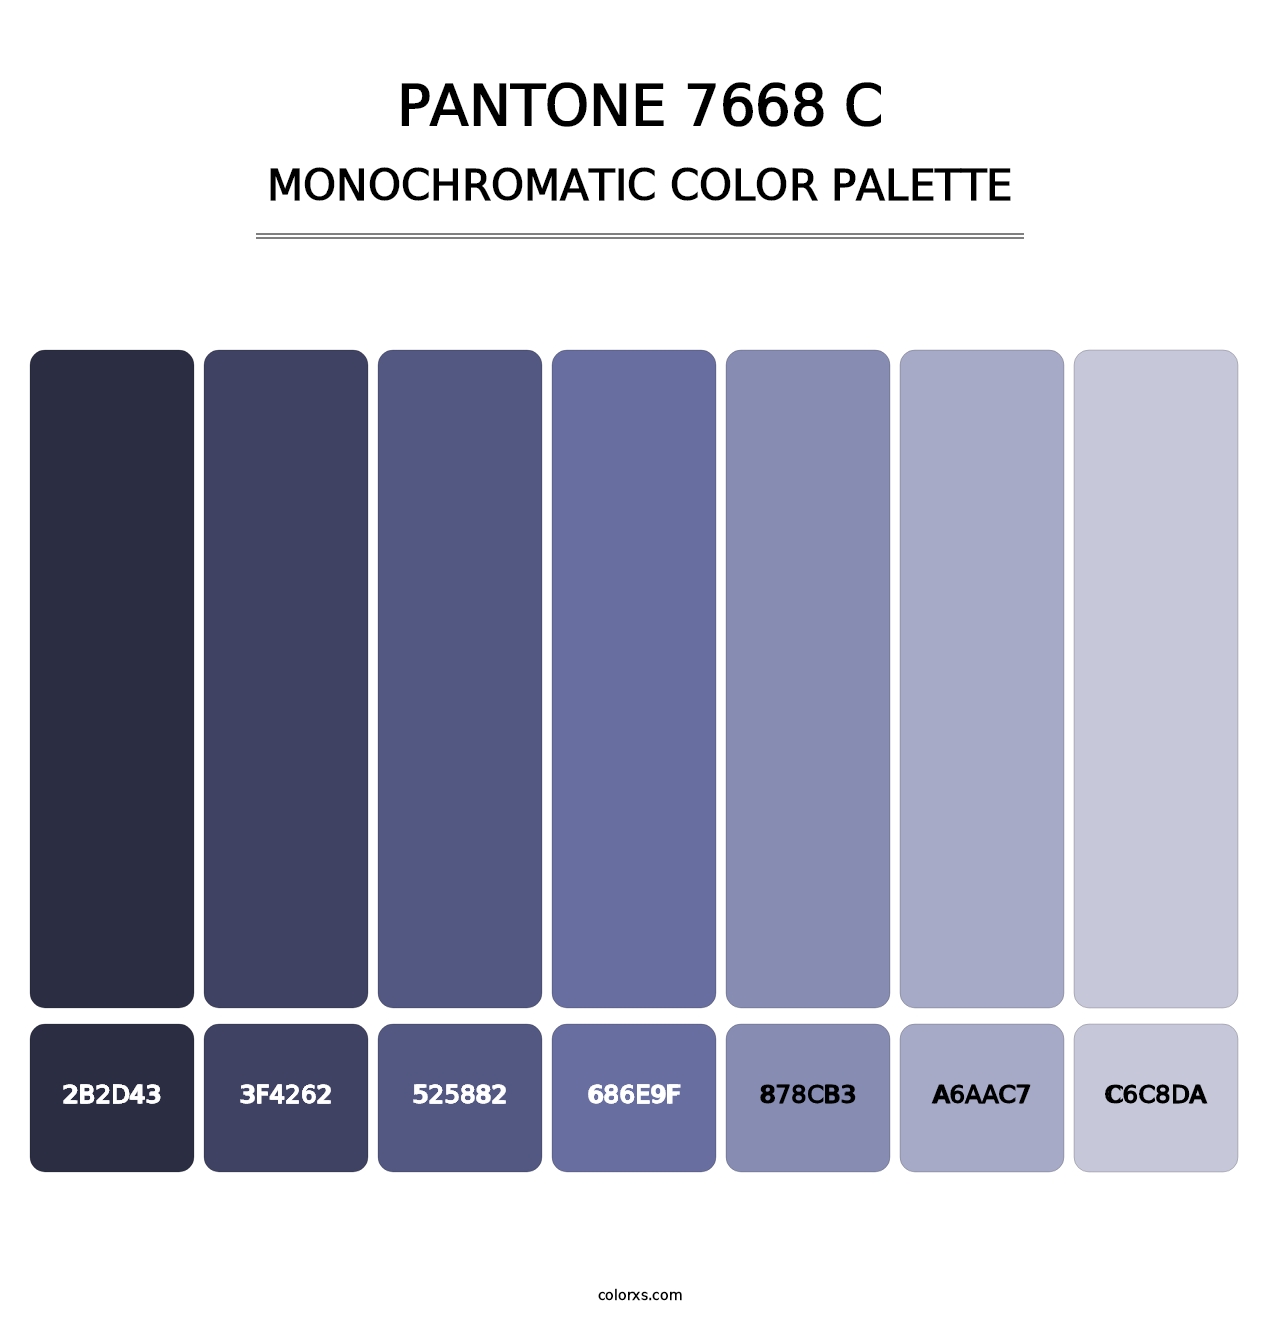 PANTONE 7668 C - Monochromatic Color Palette